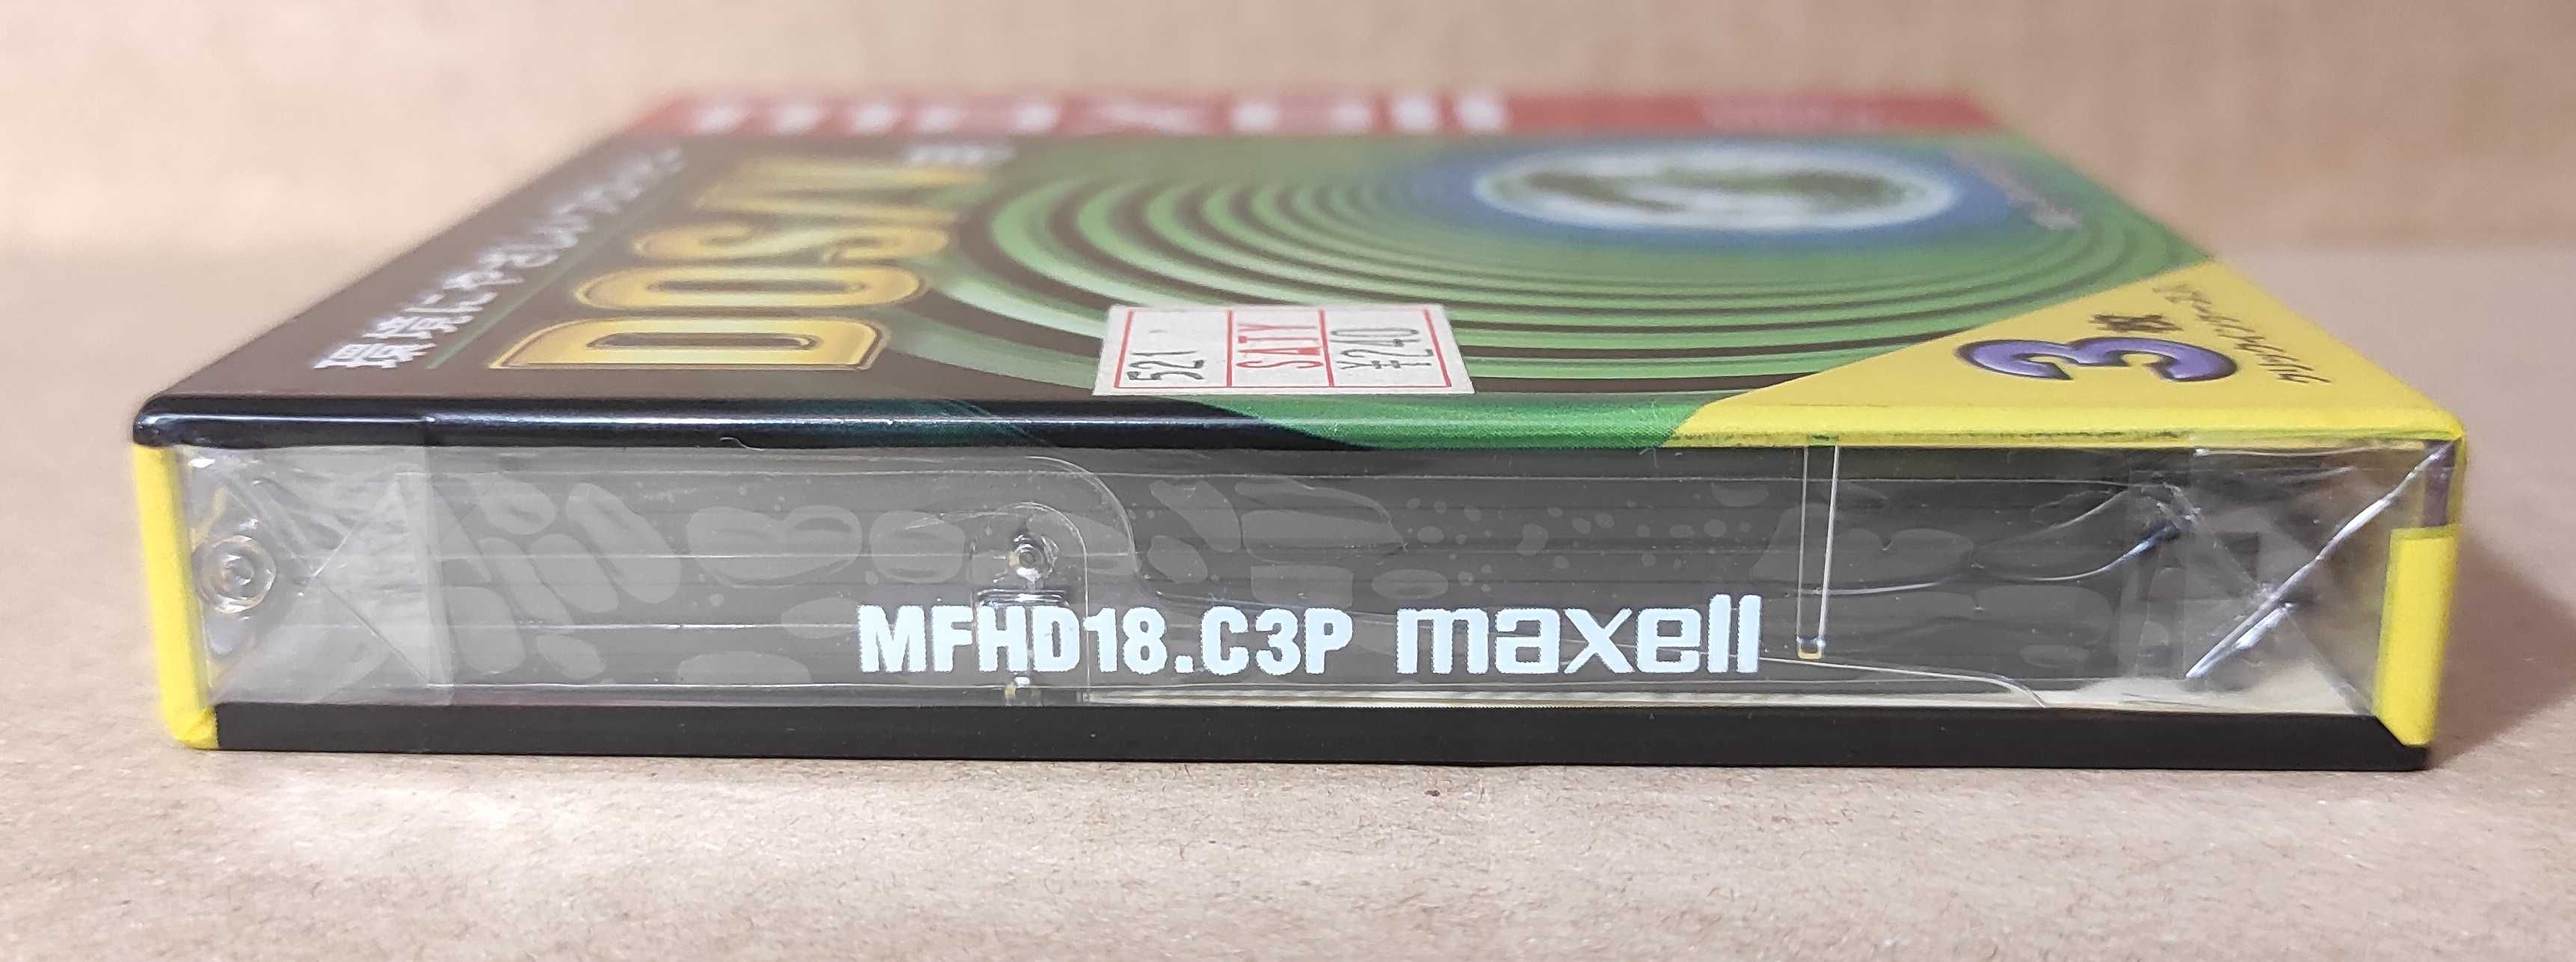 Новые дискеты MAXELL